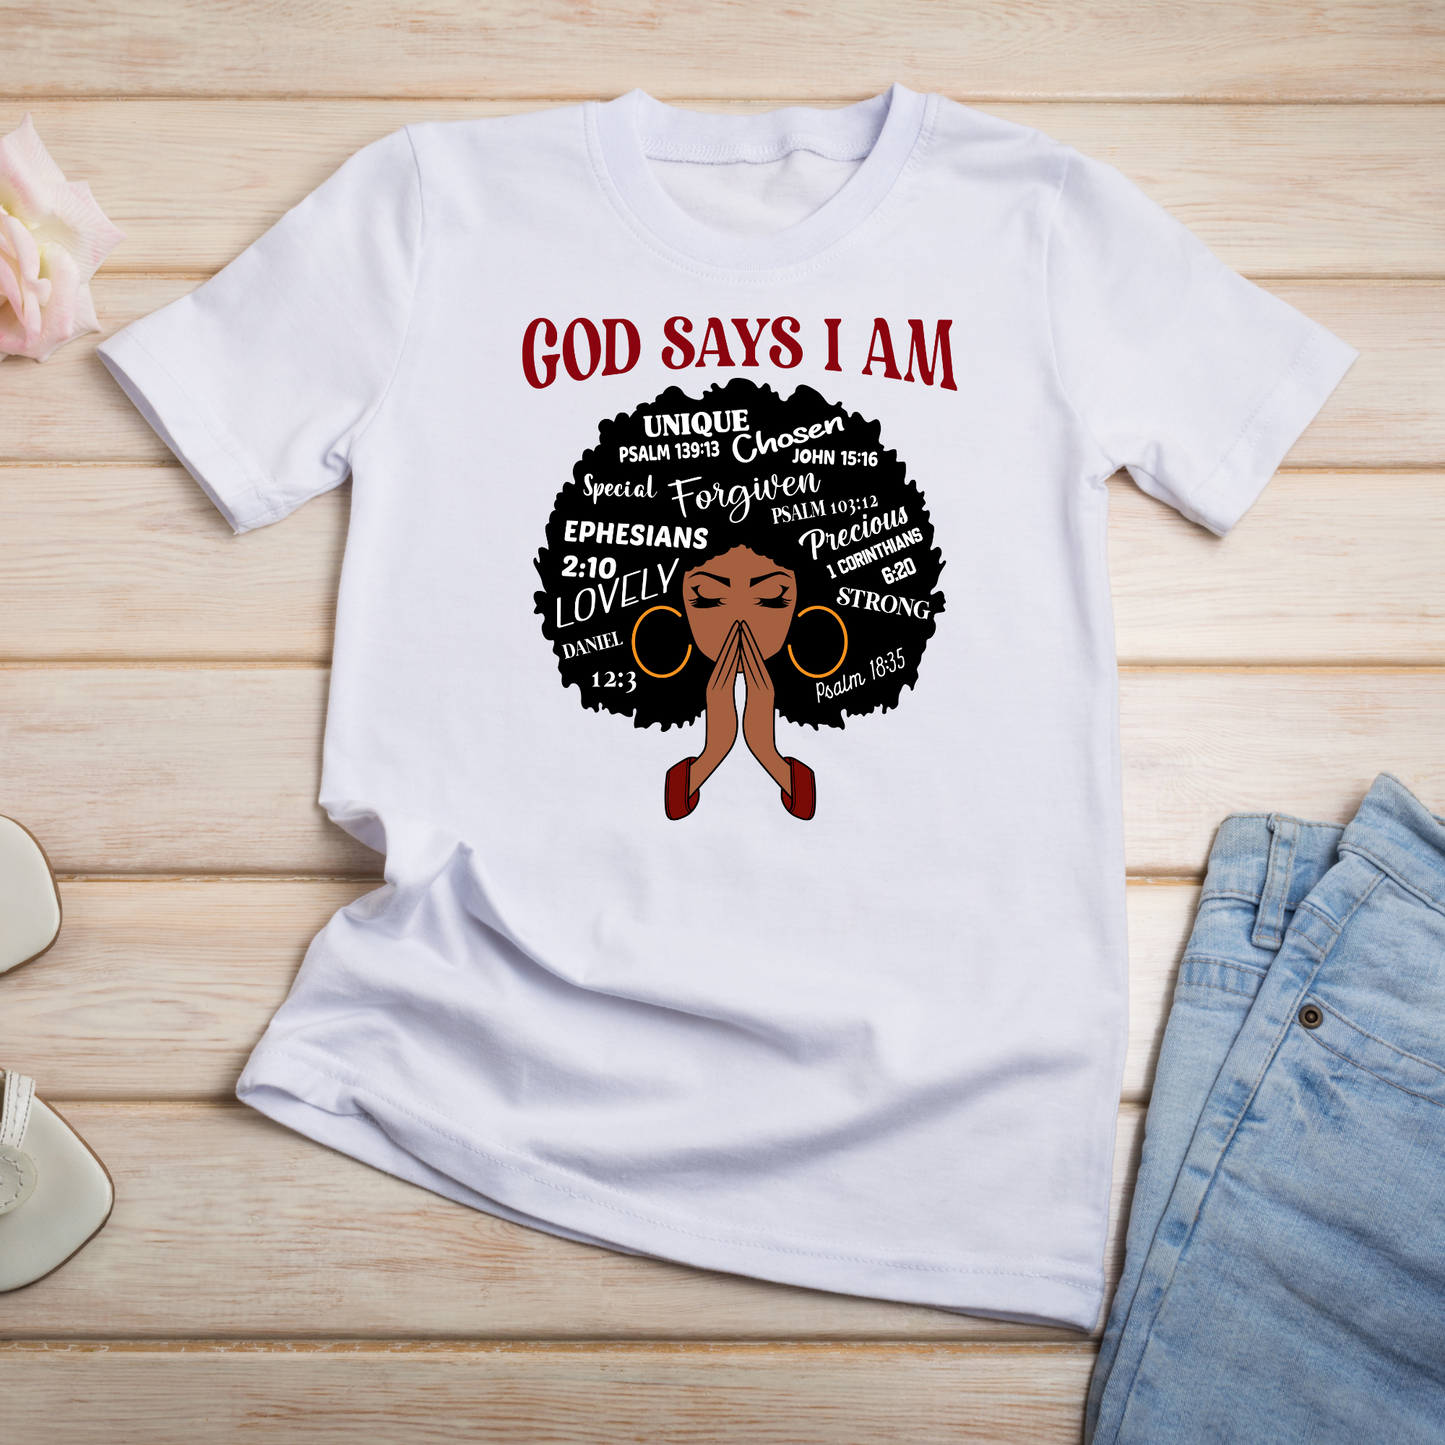 God Says I Am Short Sleeve Crew Neck T-shirt